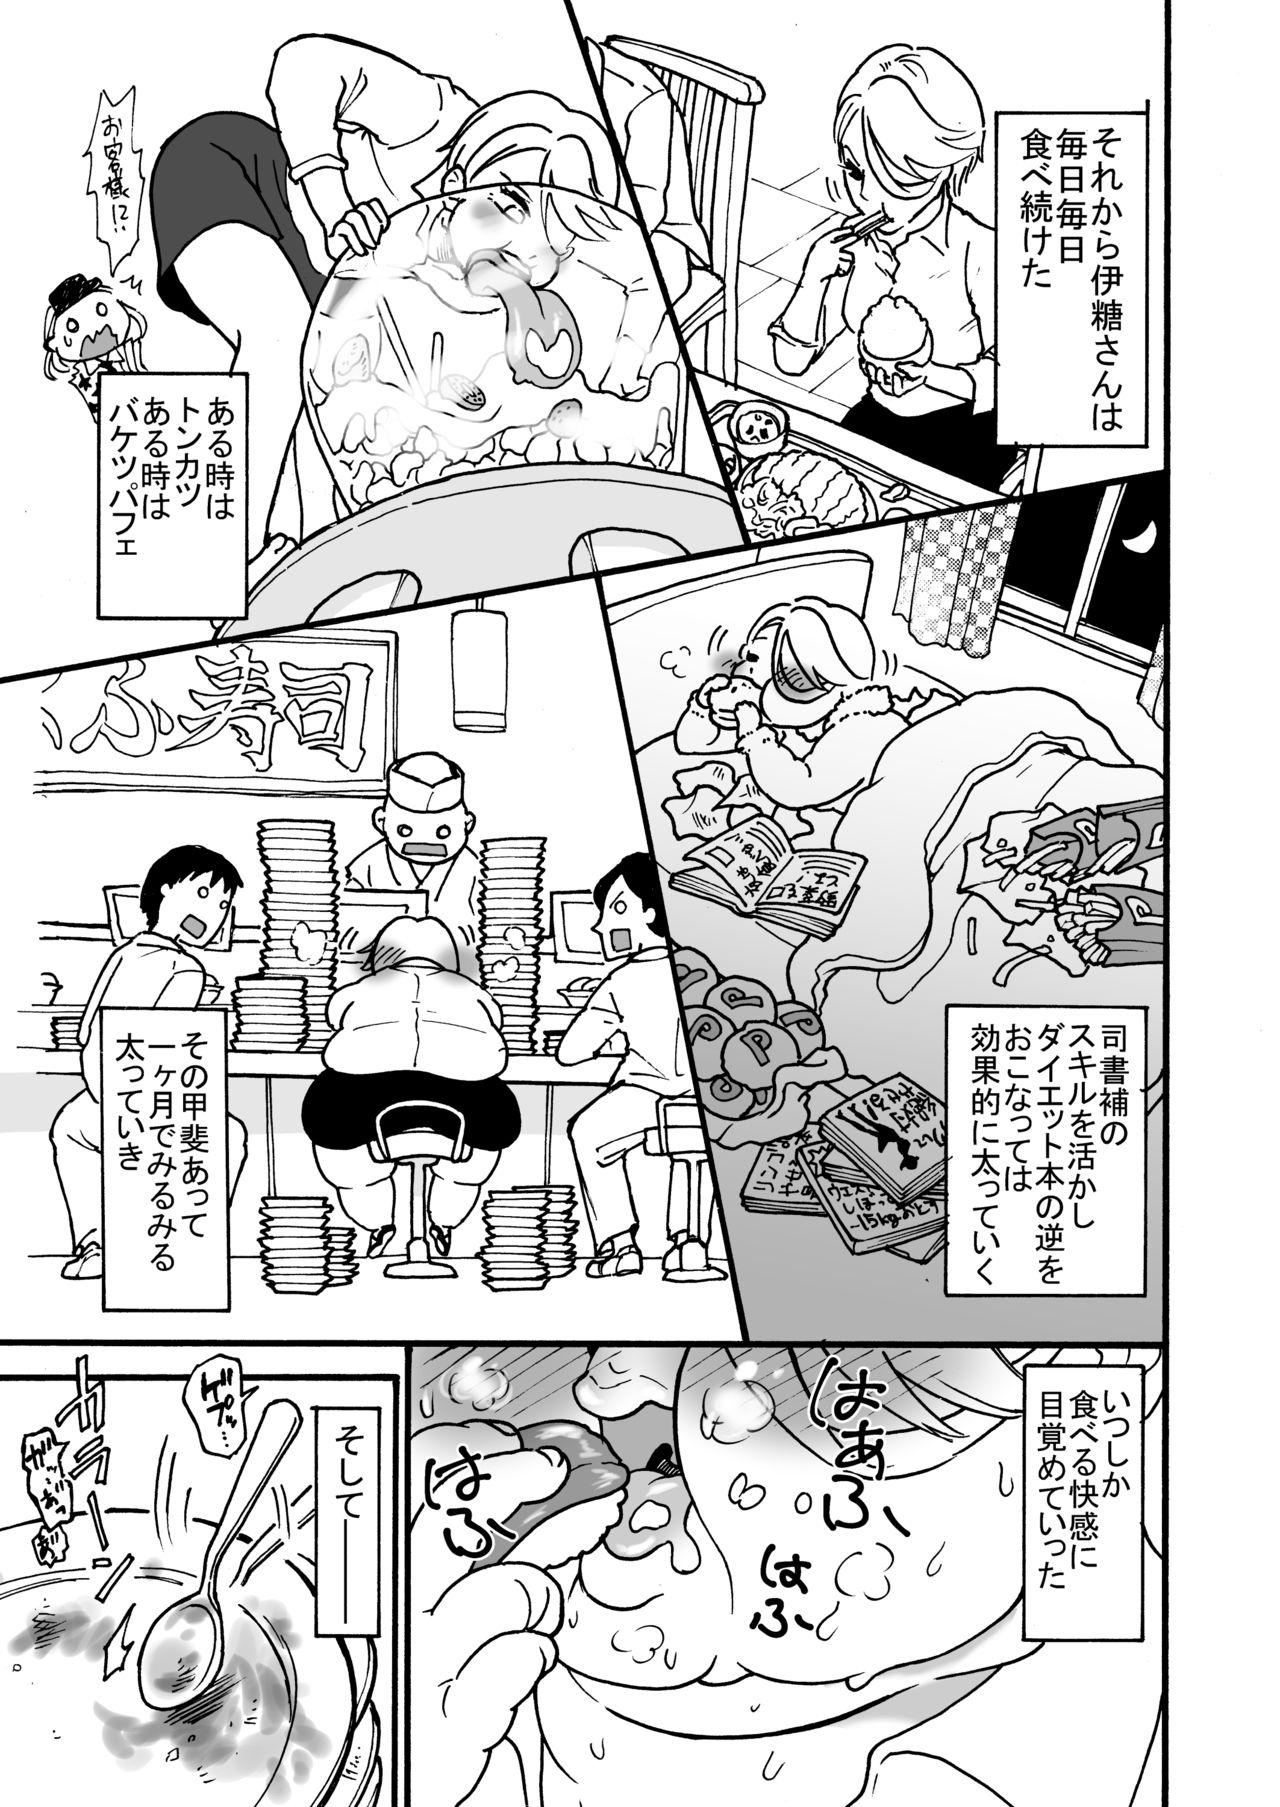 Gostosas himanka shishoho no itou-san - Original Price - Page 4